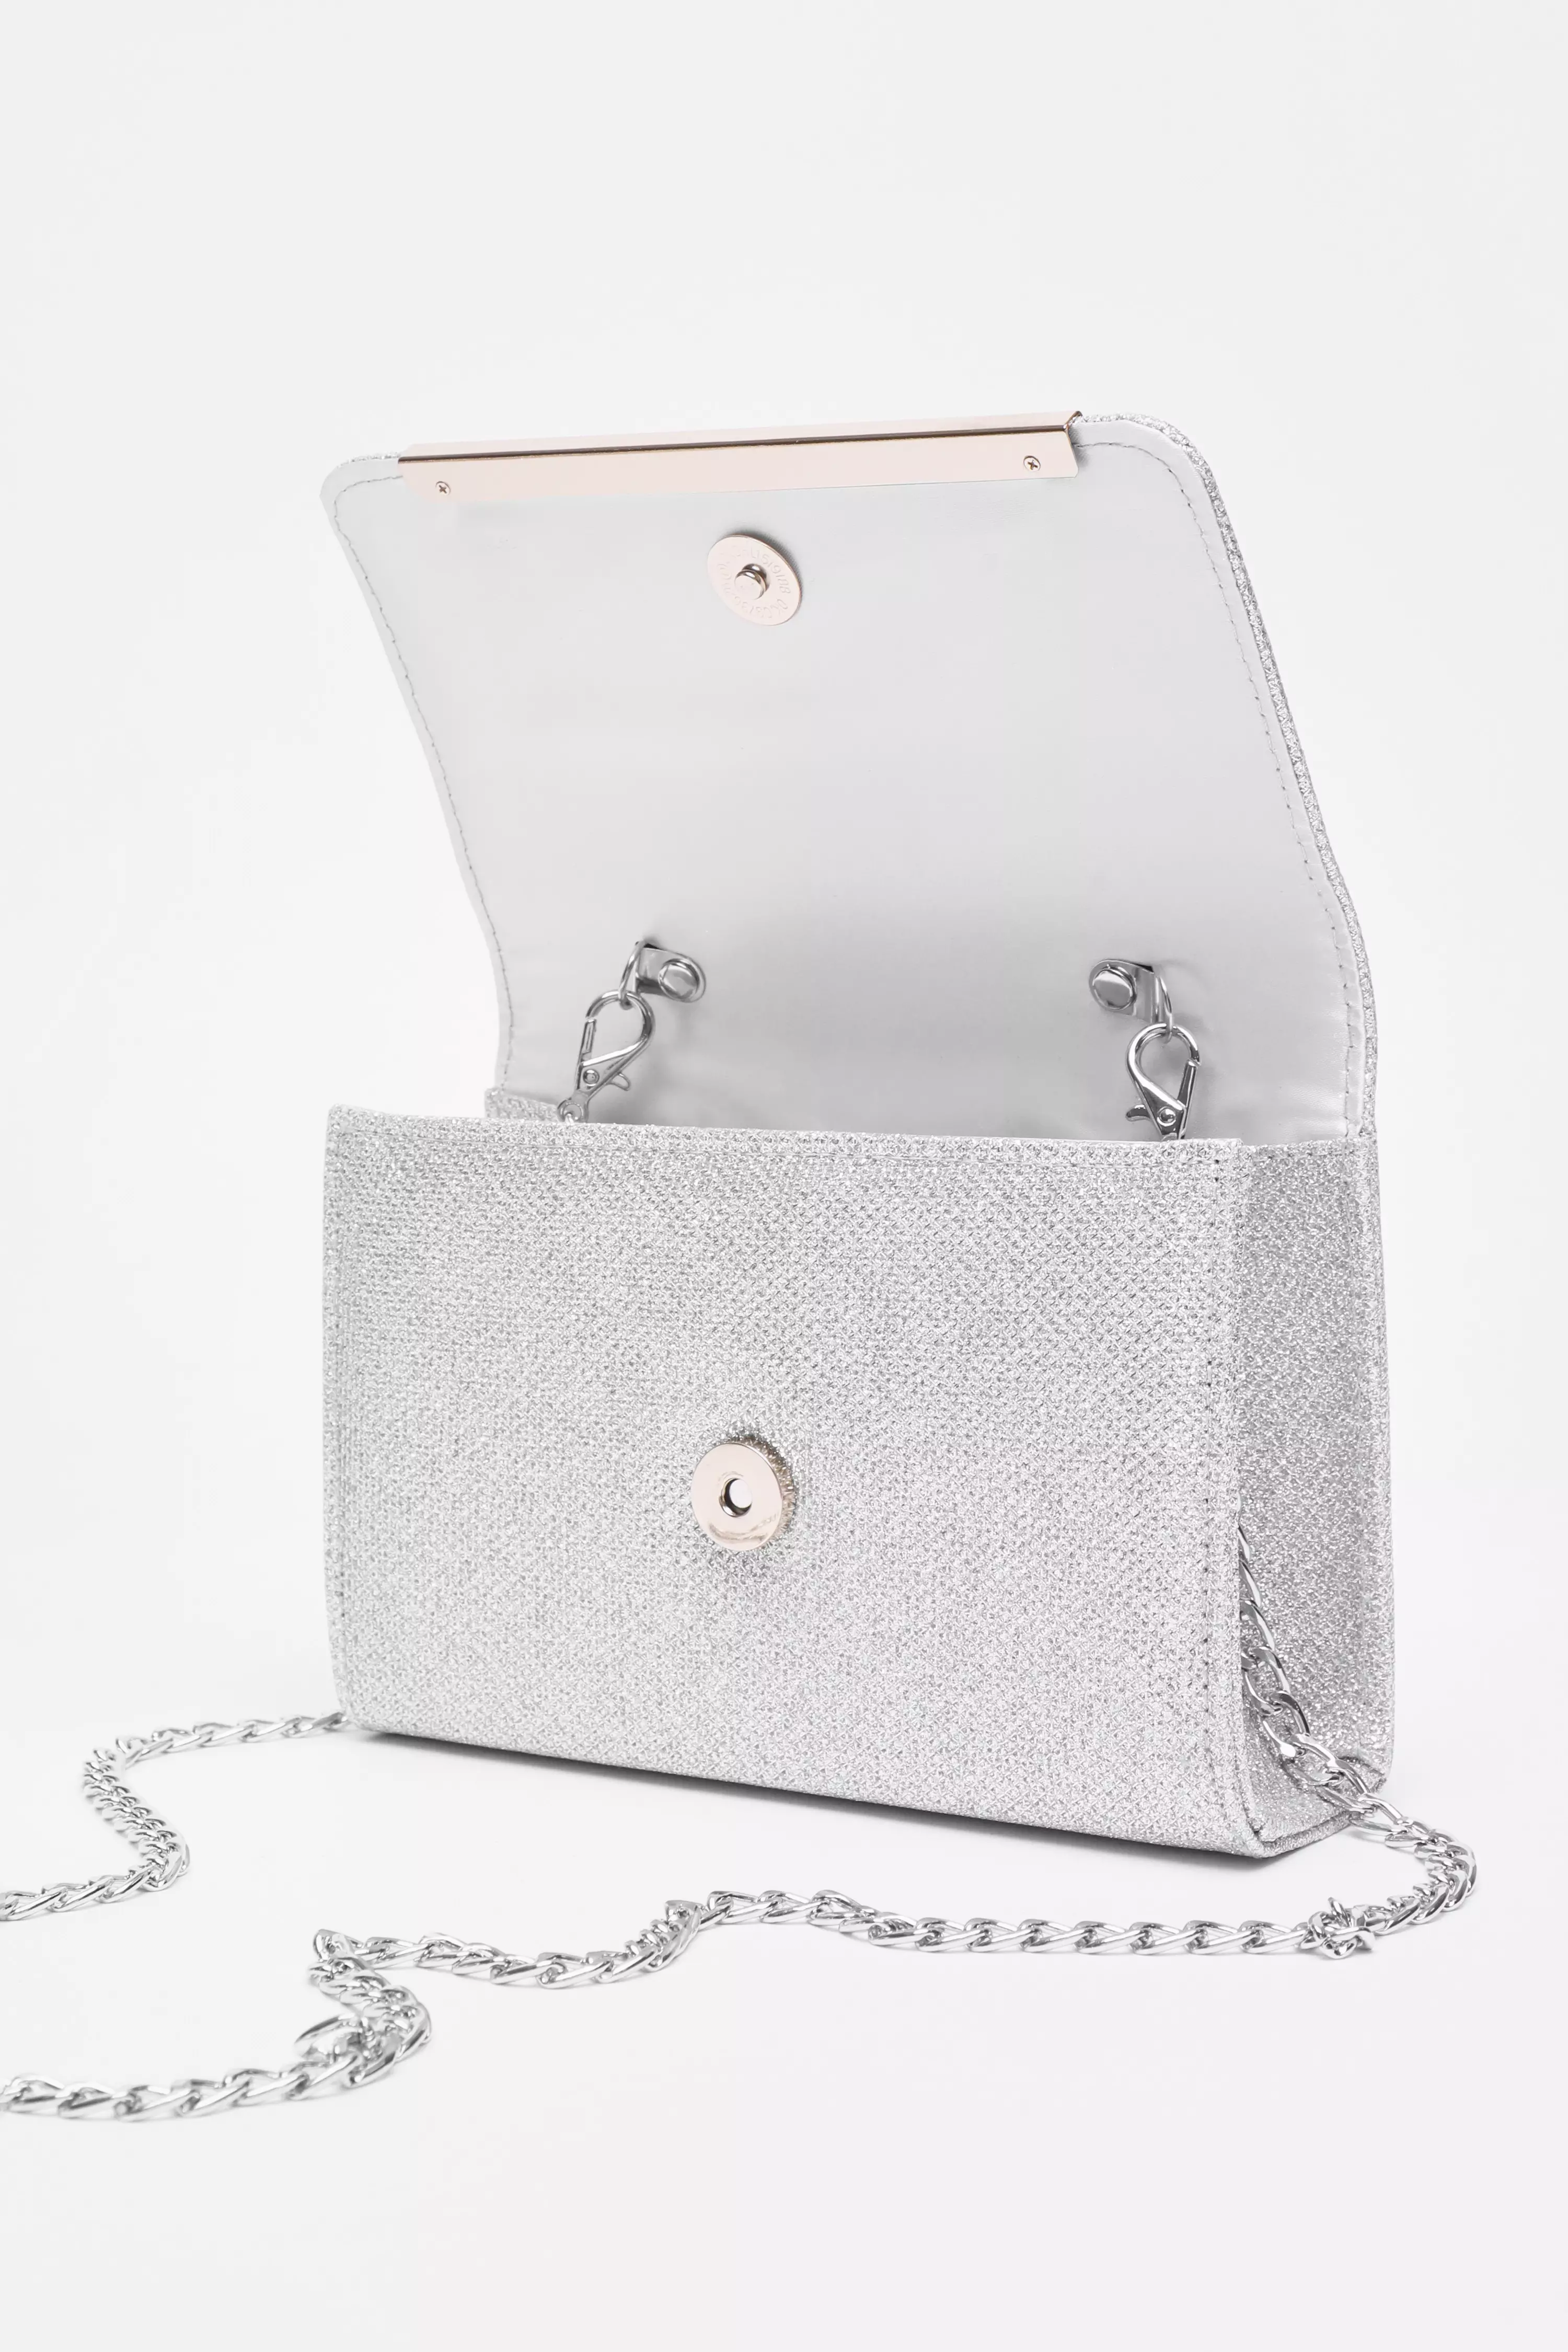 Silver Shimmer Cross Body Bag